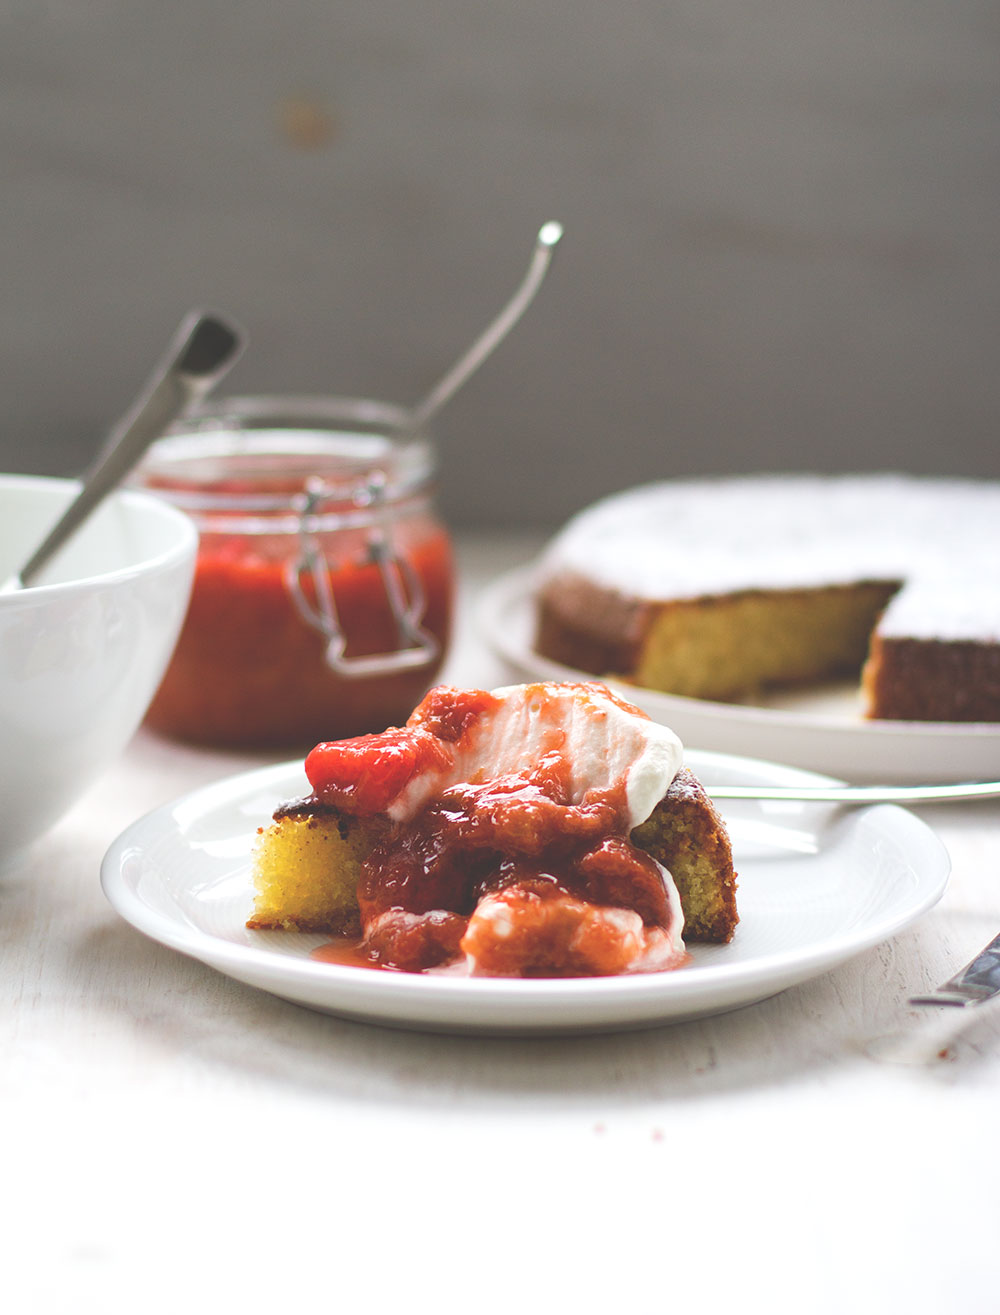 Rezept für saftigen Mandelkuchen mit Rhabarber-Erdbeer-Kompott